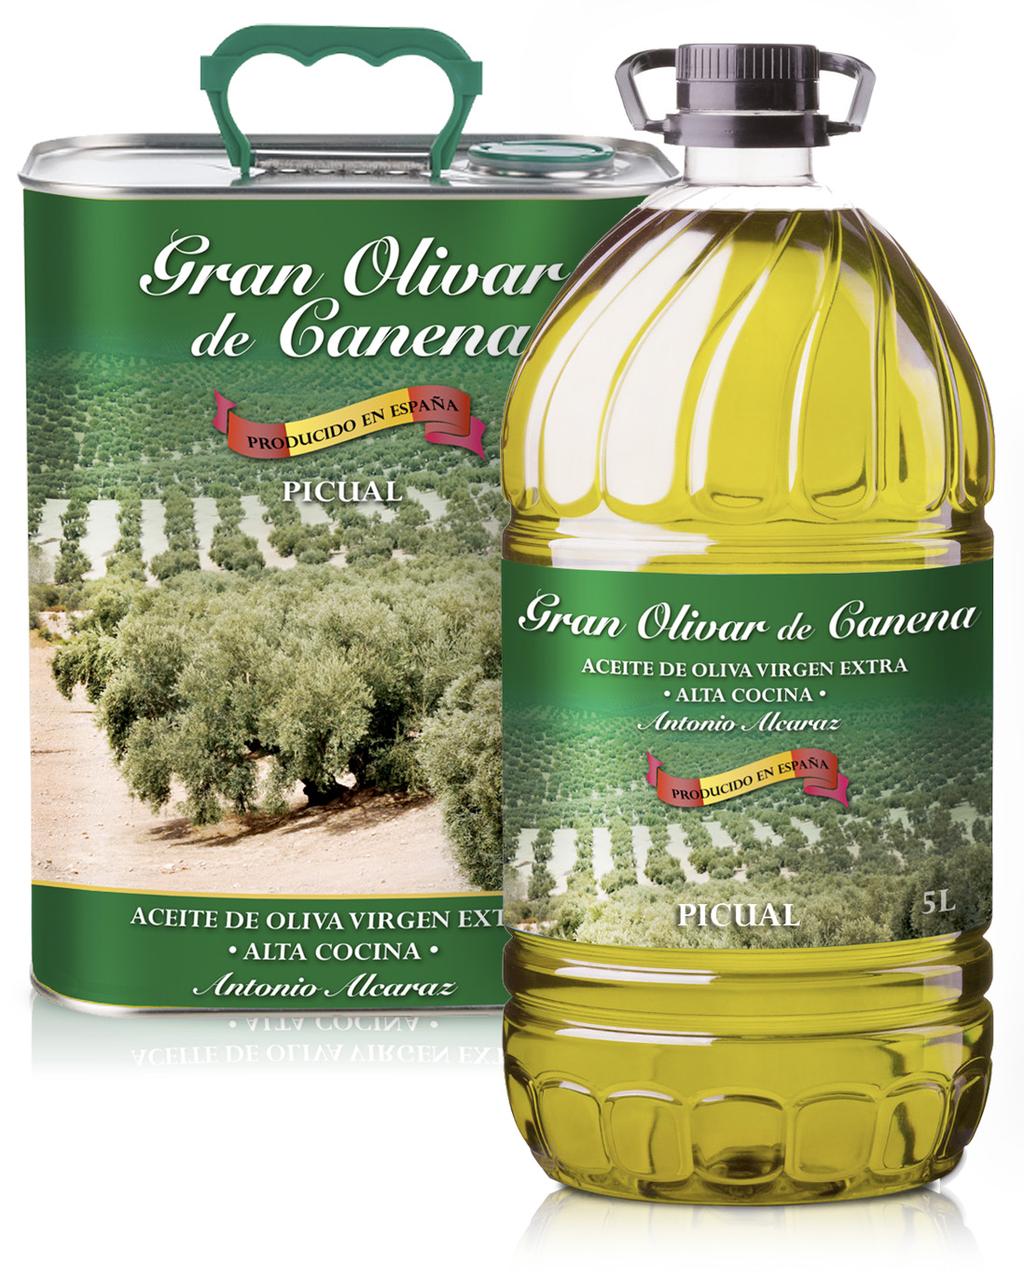 Gran Olivar de Canena de Antonio Alcaraz Aceite de oliva virgen extra obtenido por procesos mecánicos. Especial para la alta cocina.